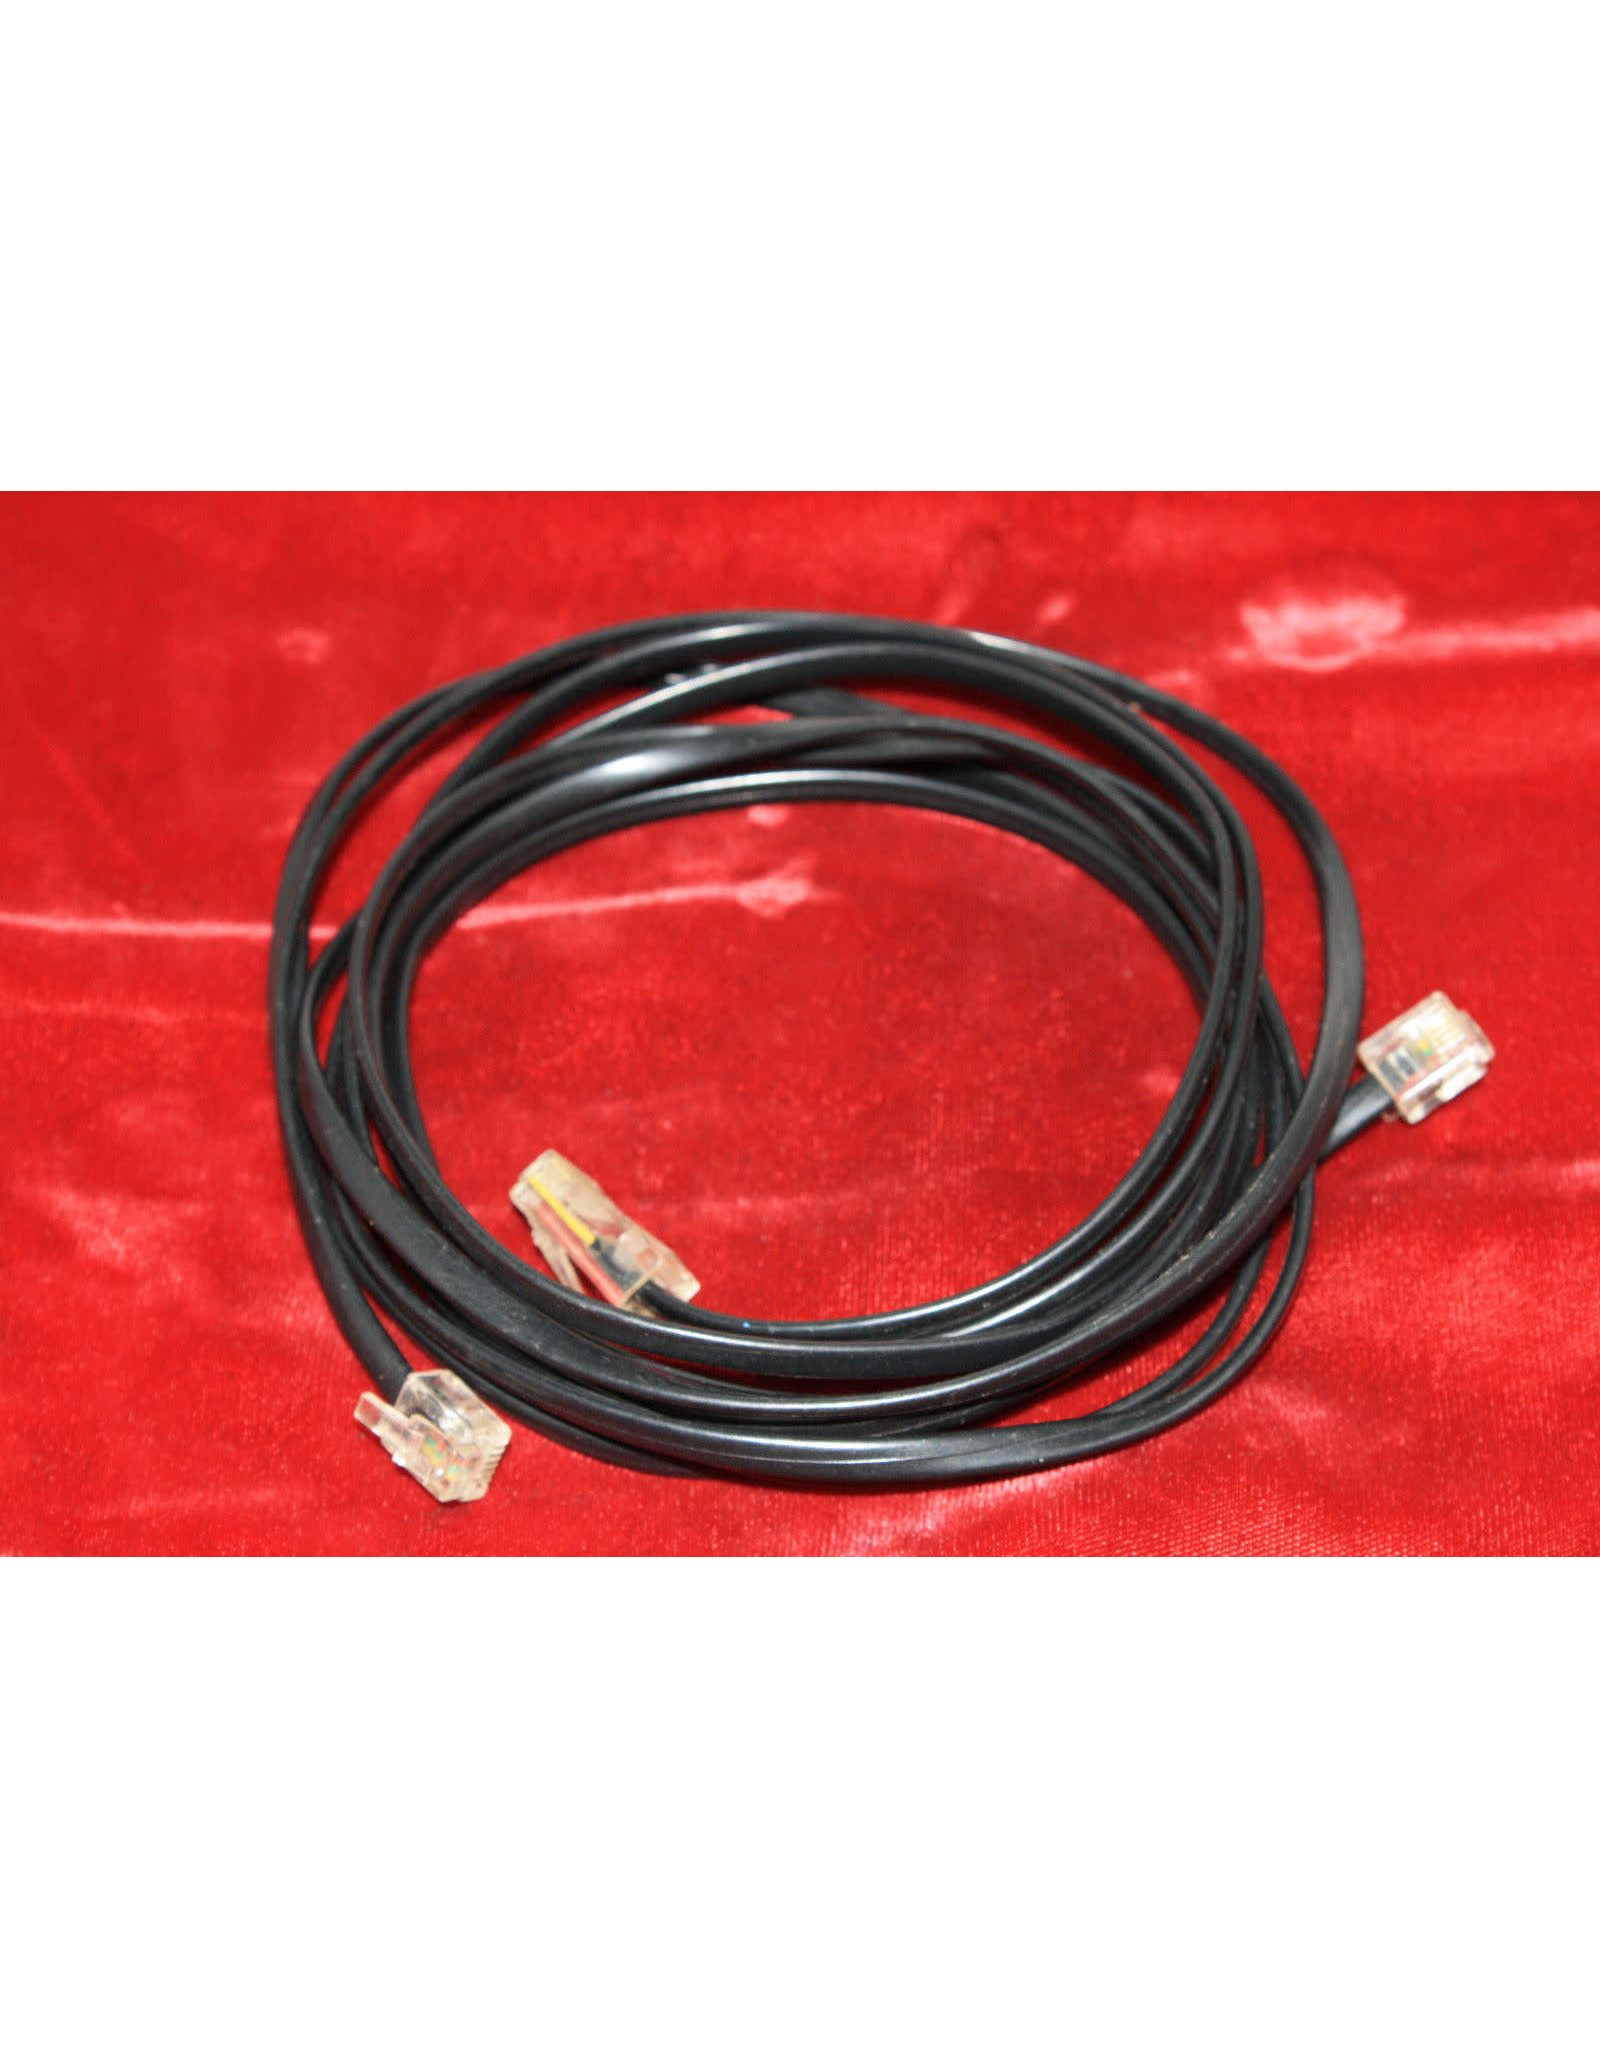 JMI JMI Encoder Cable (Limited Quantities)